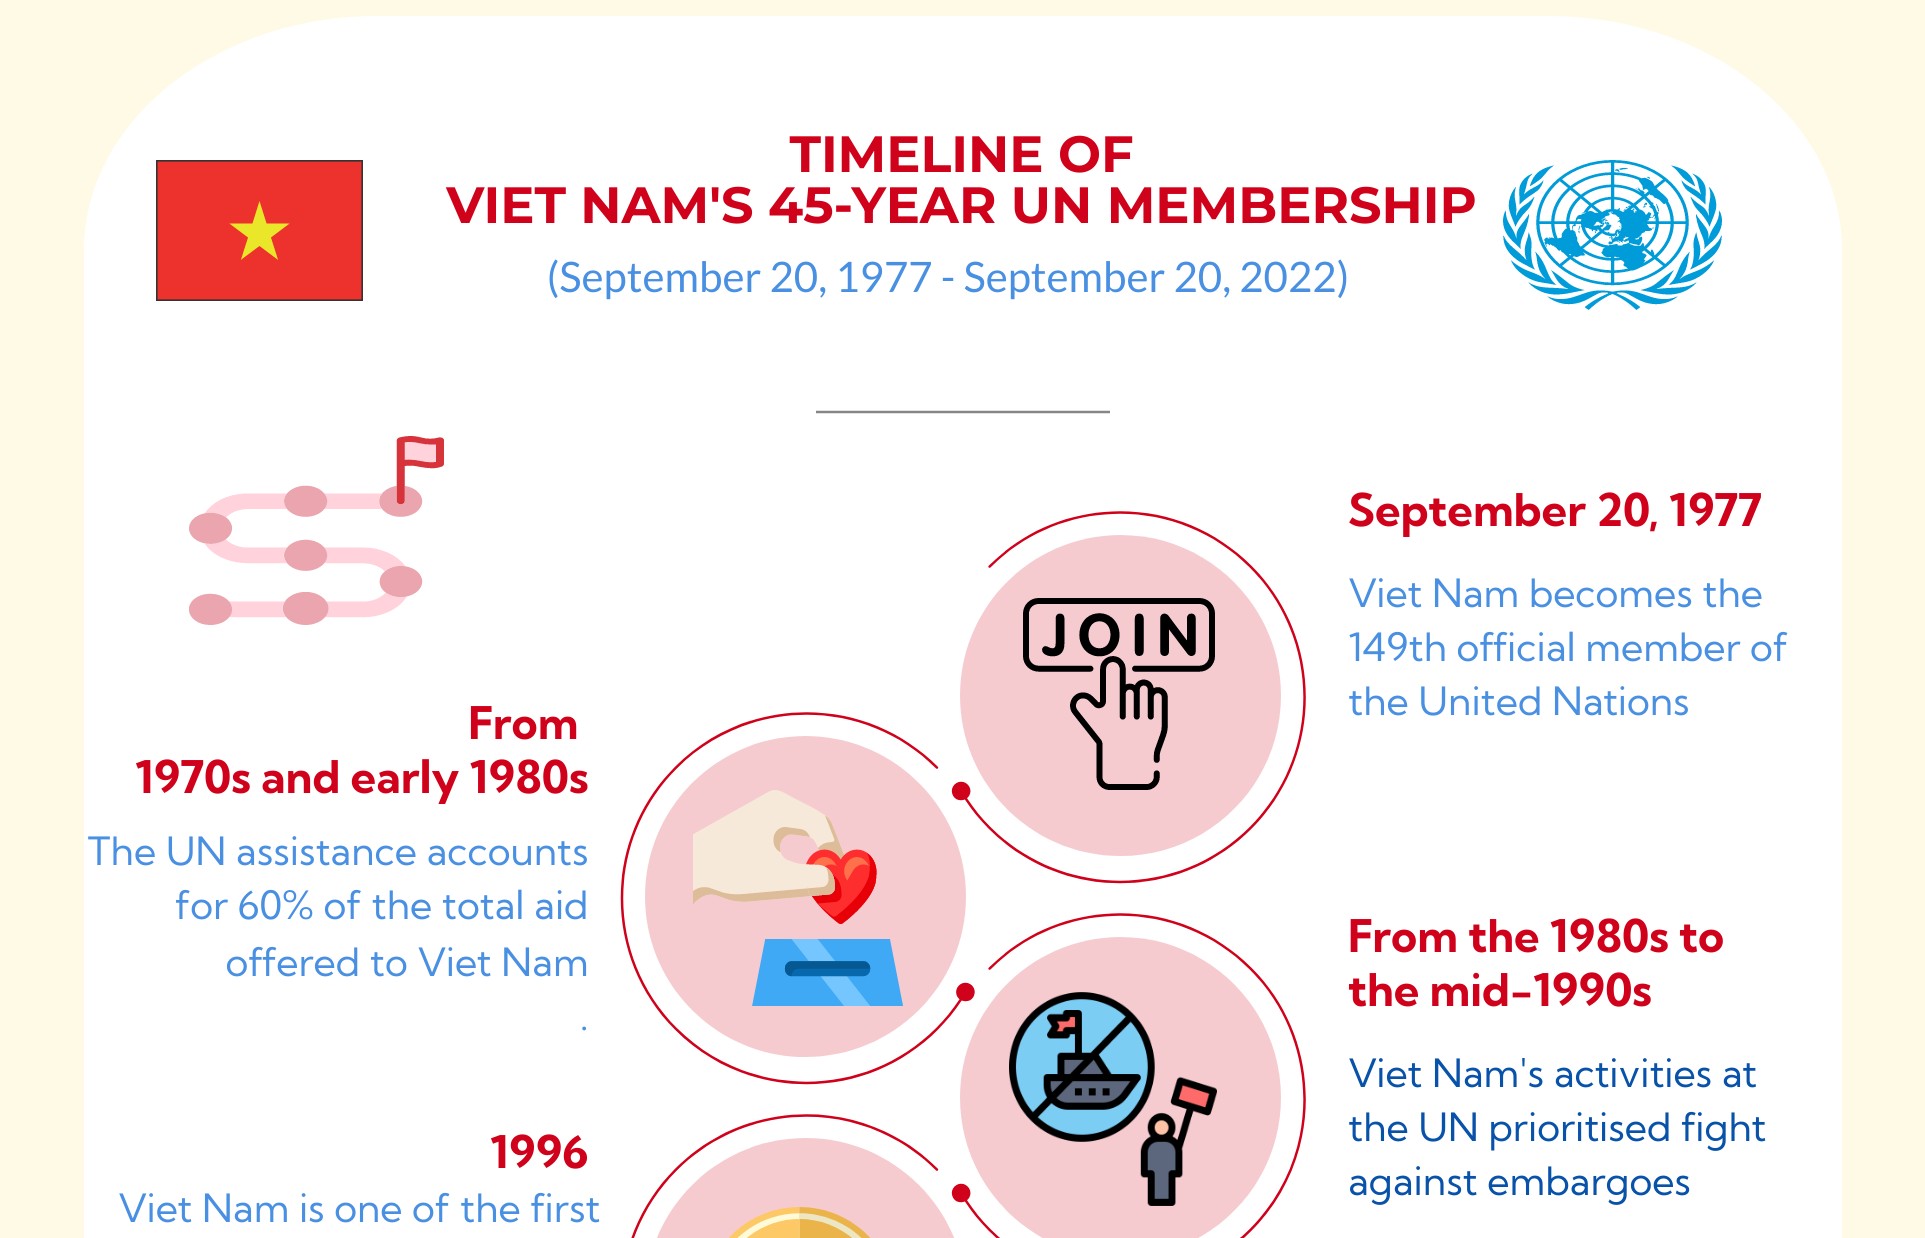 Overview of Vietnam’s 45-year un membership